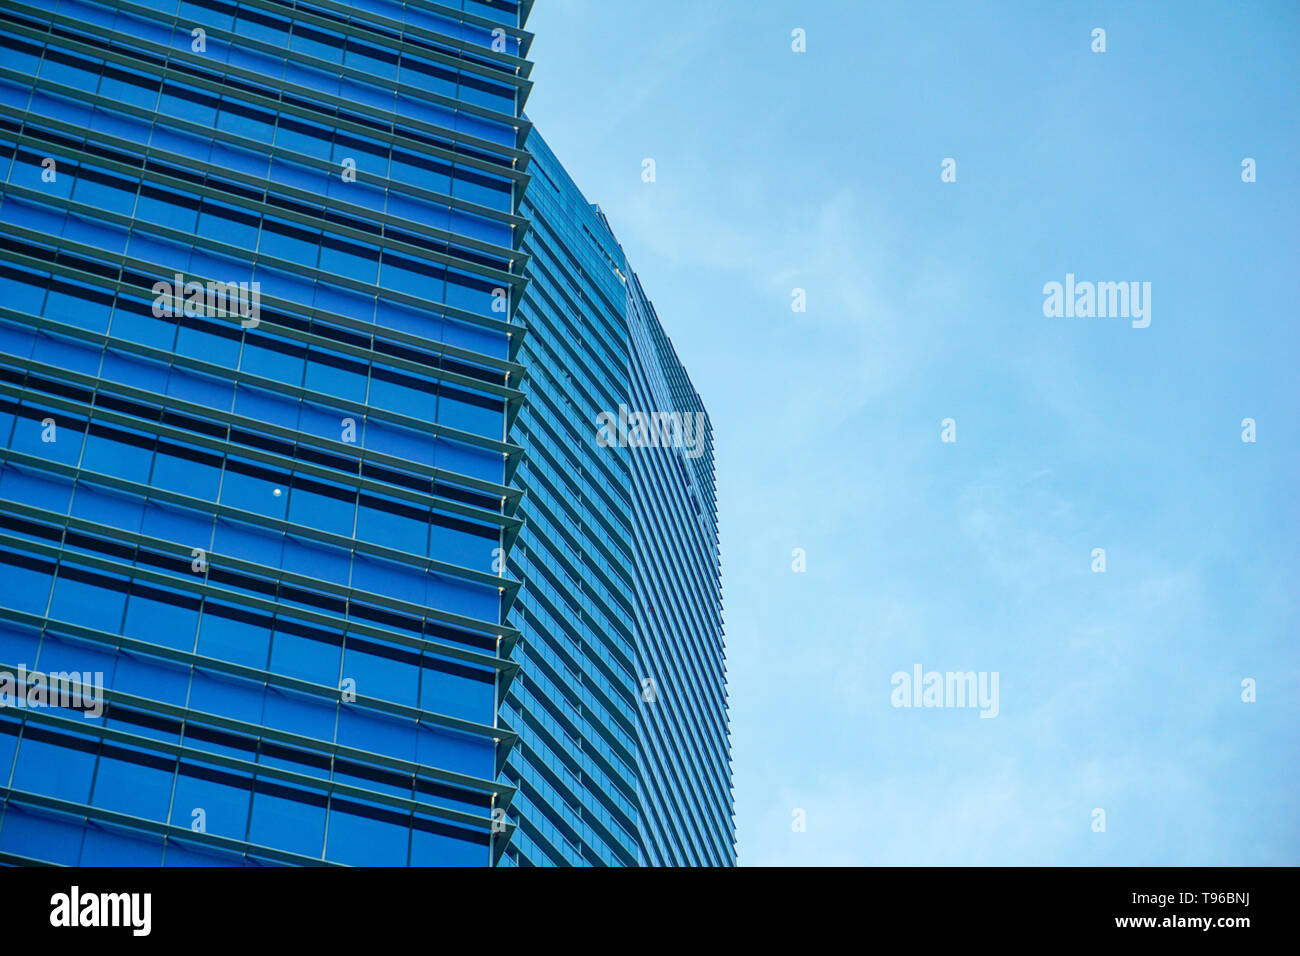 Des gratte-ciel, à la perspective de voir des entreprises modernes, des gratte-ciel, de vue du ciel paysage de bâtiment commercial Banque D'Images